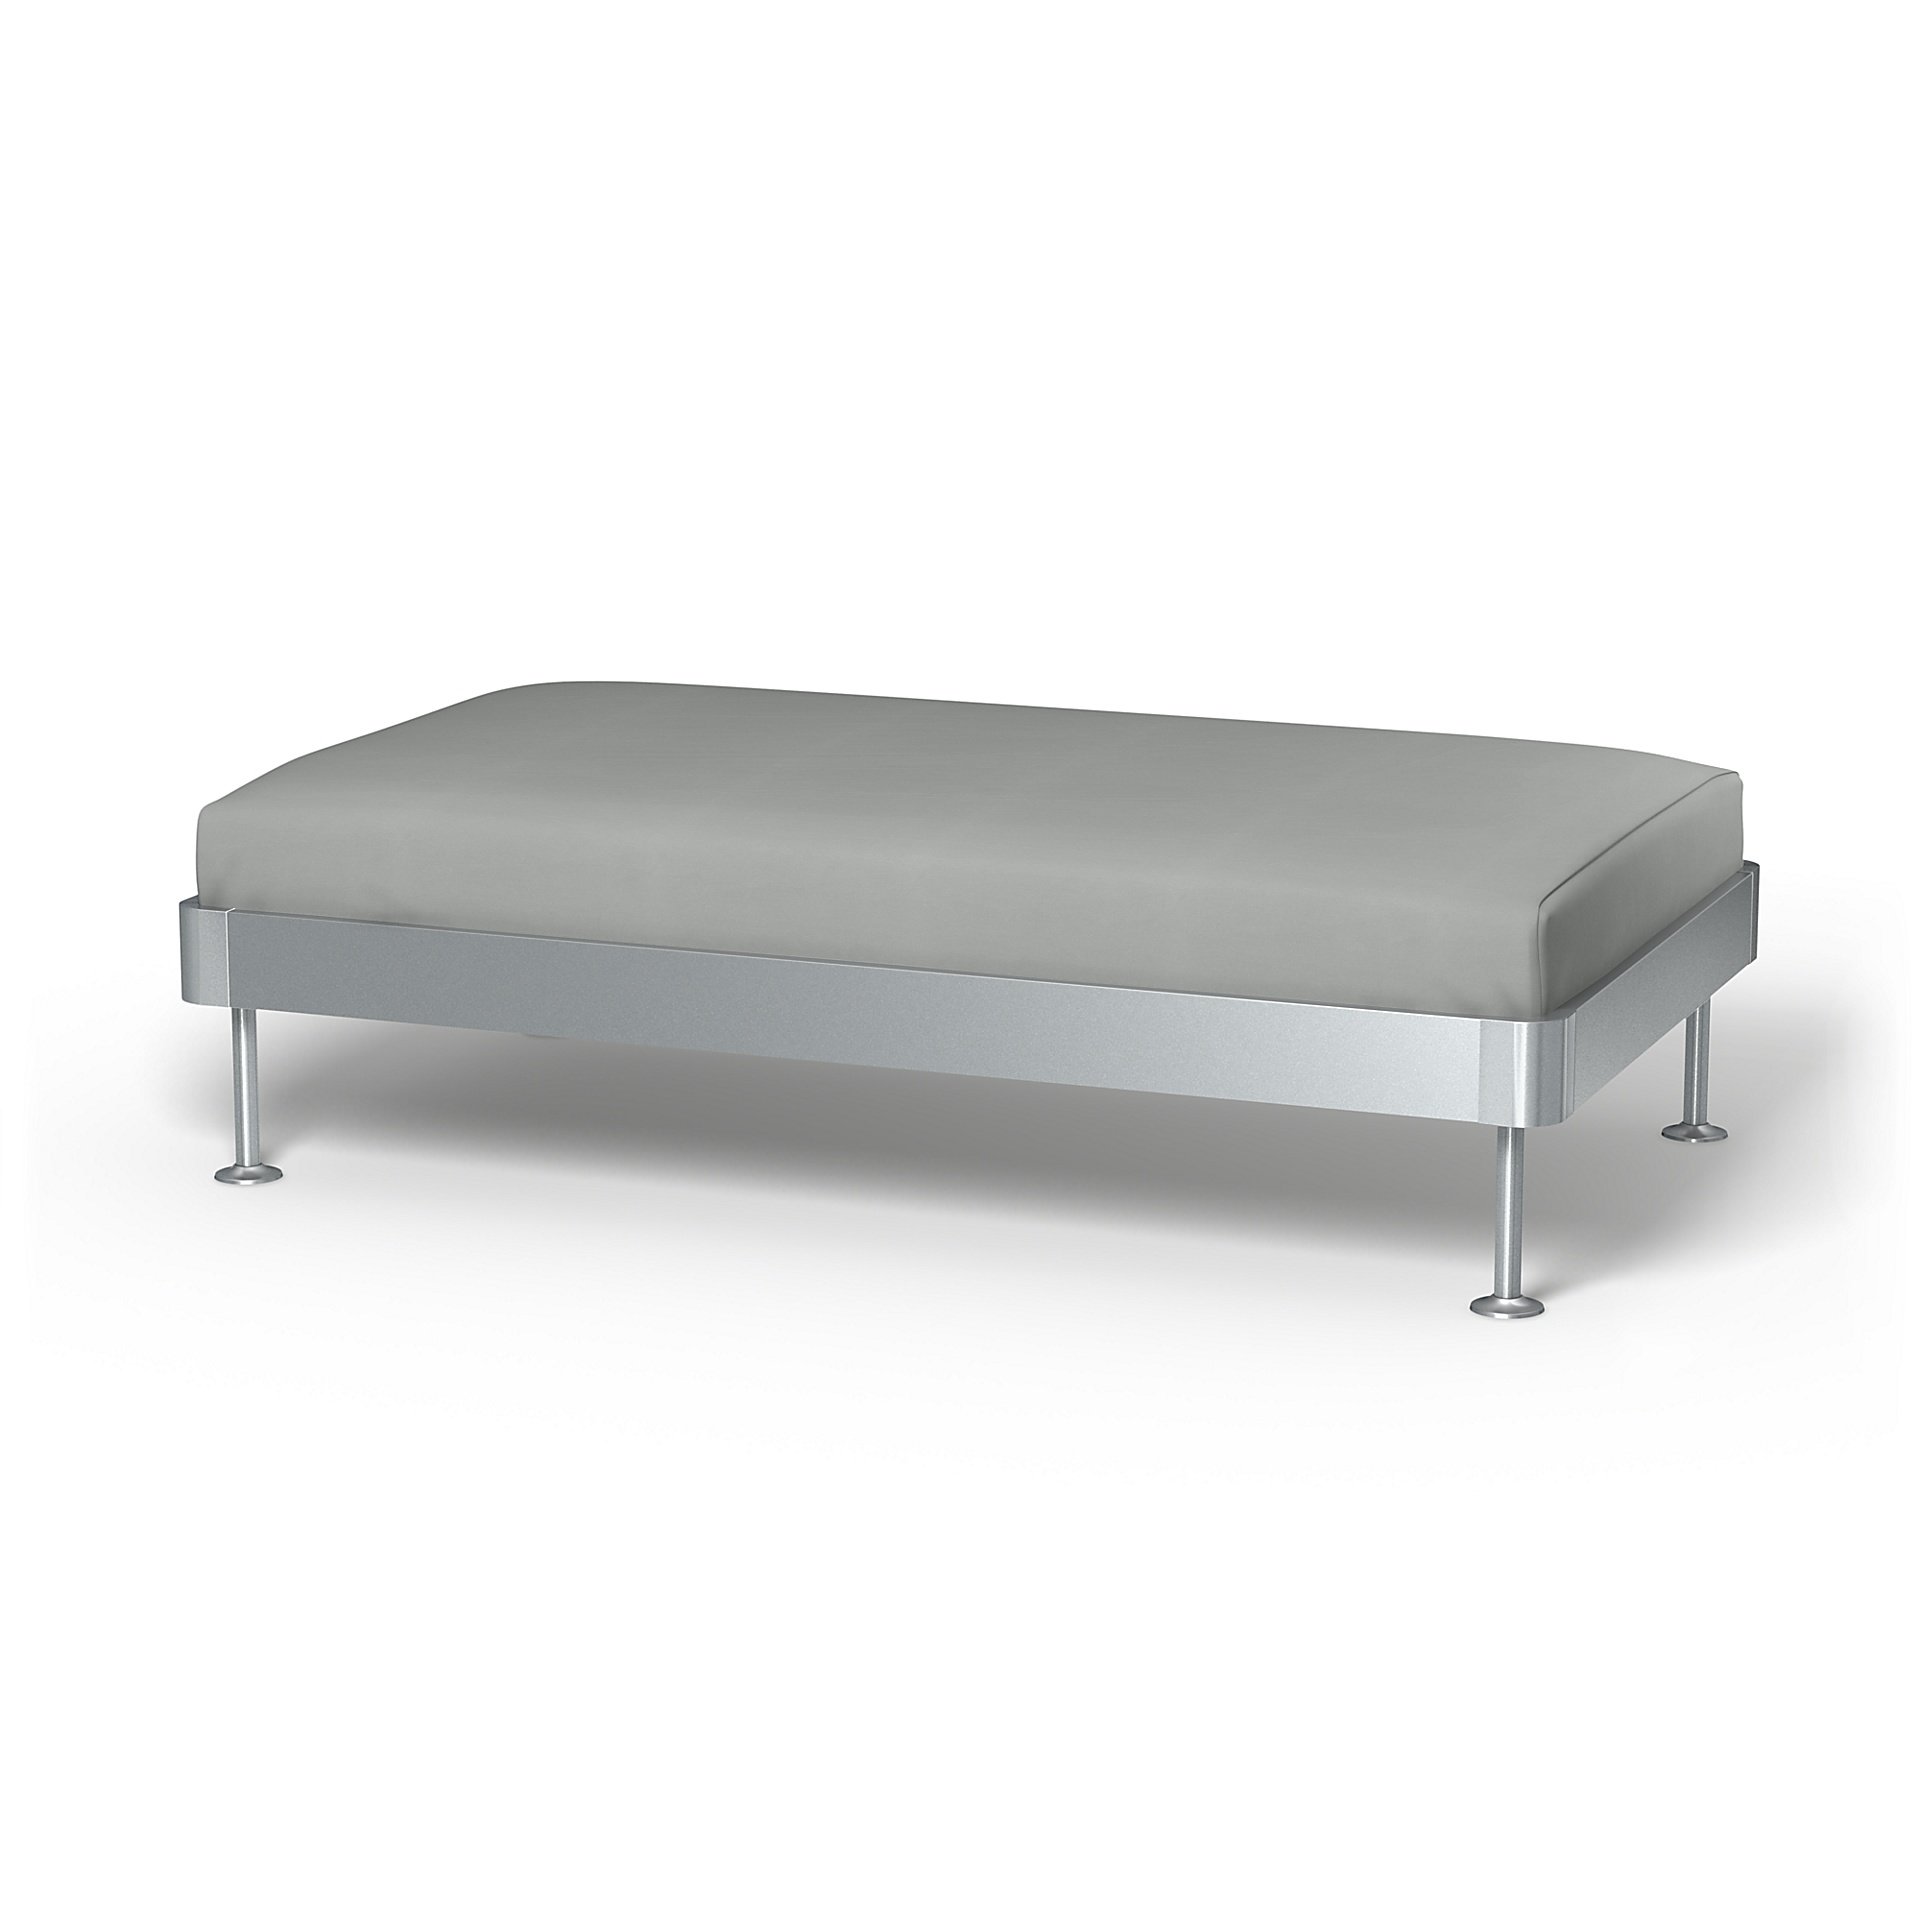 IKEA - Delaktig 2 Seat Platform Cover, Silver Grey, Cotton - Bemz